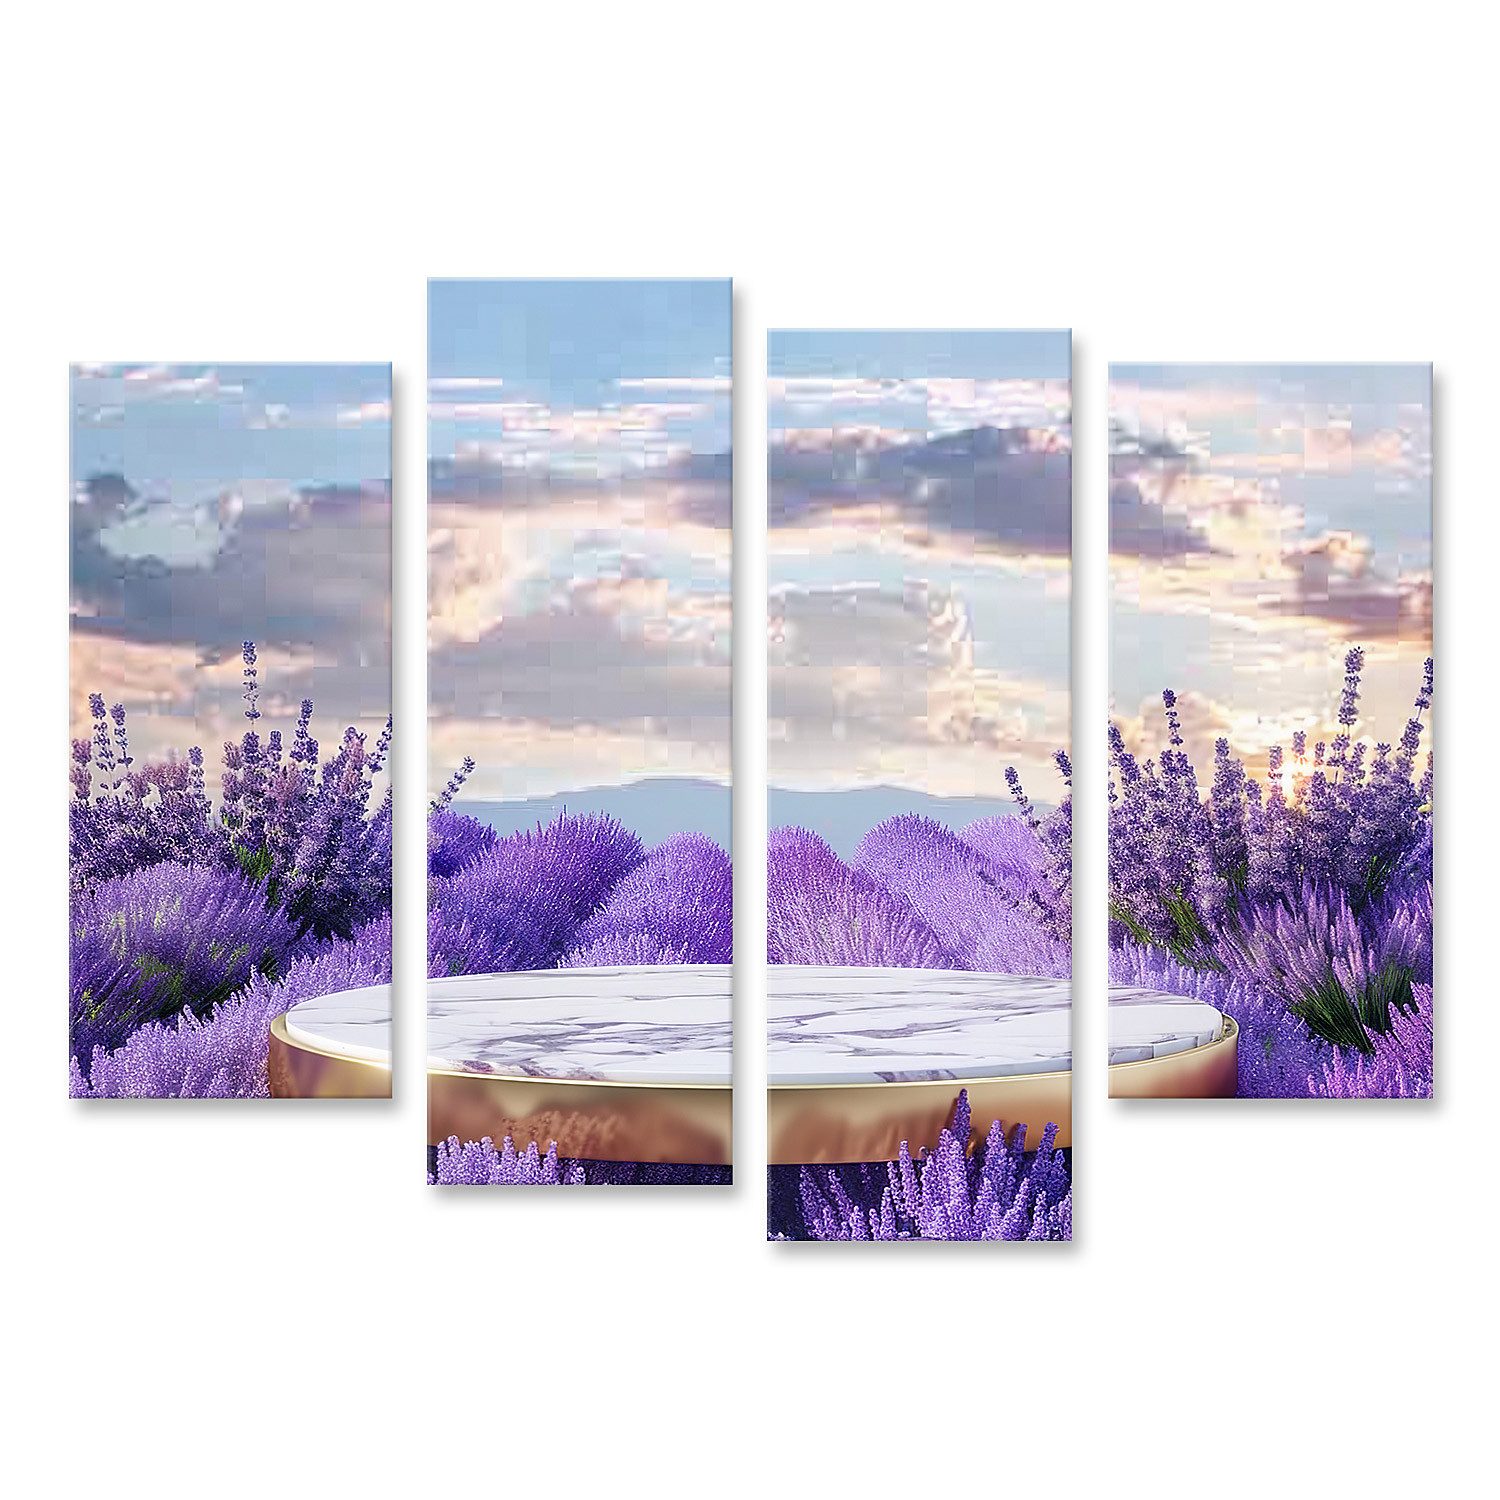 islandburner Leinwandbild Ein Marmortisch steht einsam und schön in üppigen Lavendelfeldern Essz